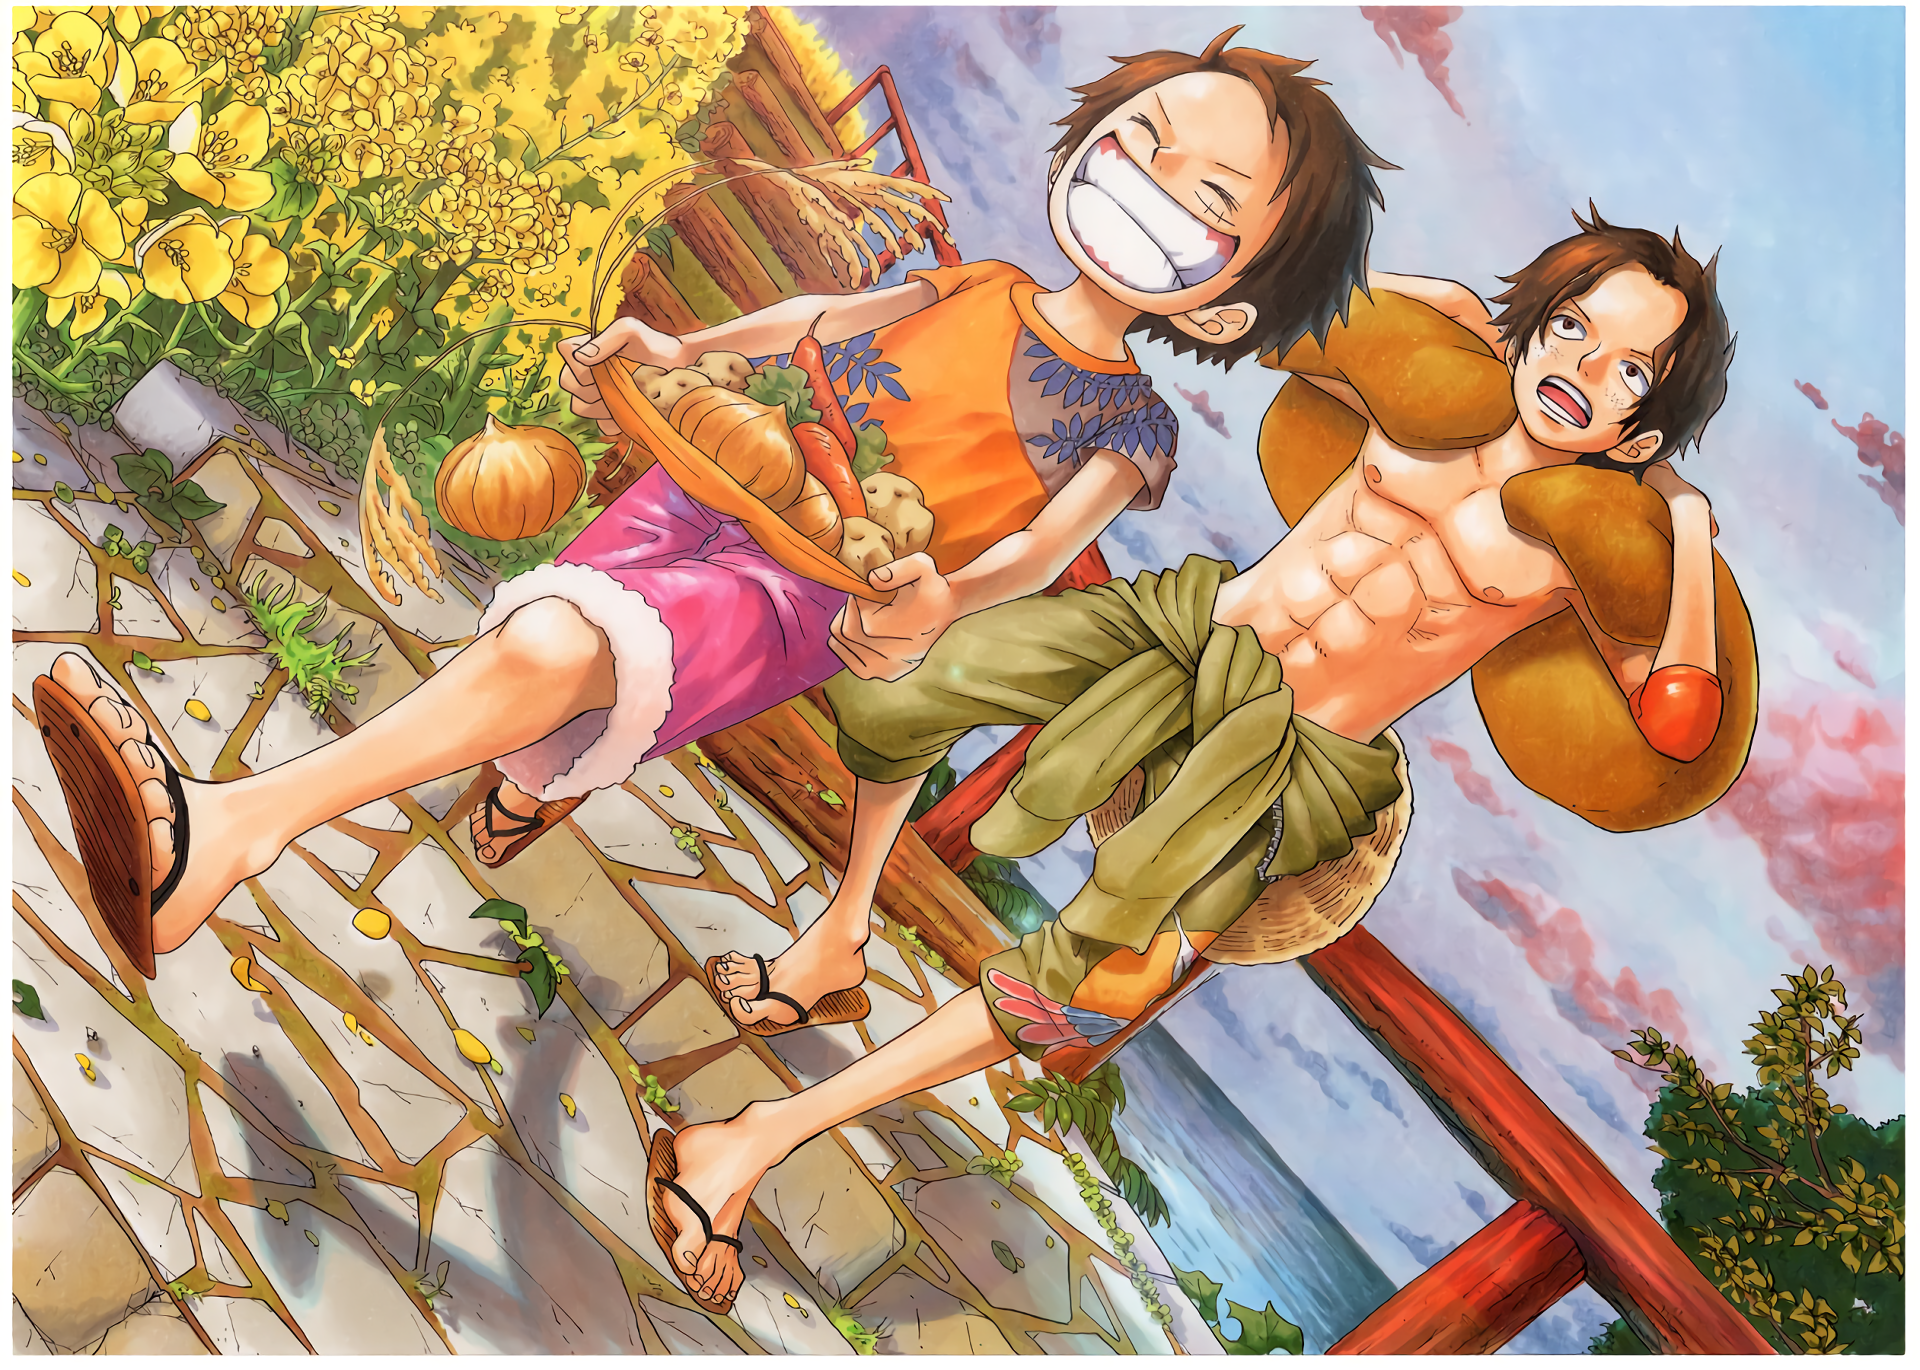 Anime One Piece HD Wallpaper - Fan của Anime One Piece ơi, bạn hãy đến với bộ sưu tập hình nền Anime One Piece HD này. Hình ảnh đầy màu sắc và chi tiết sẽ giúp cho màn hình máy tính của bạn trở nên sống động hơn bao giờ hết.